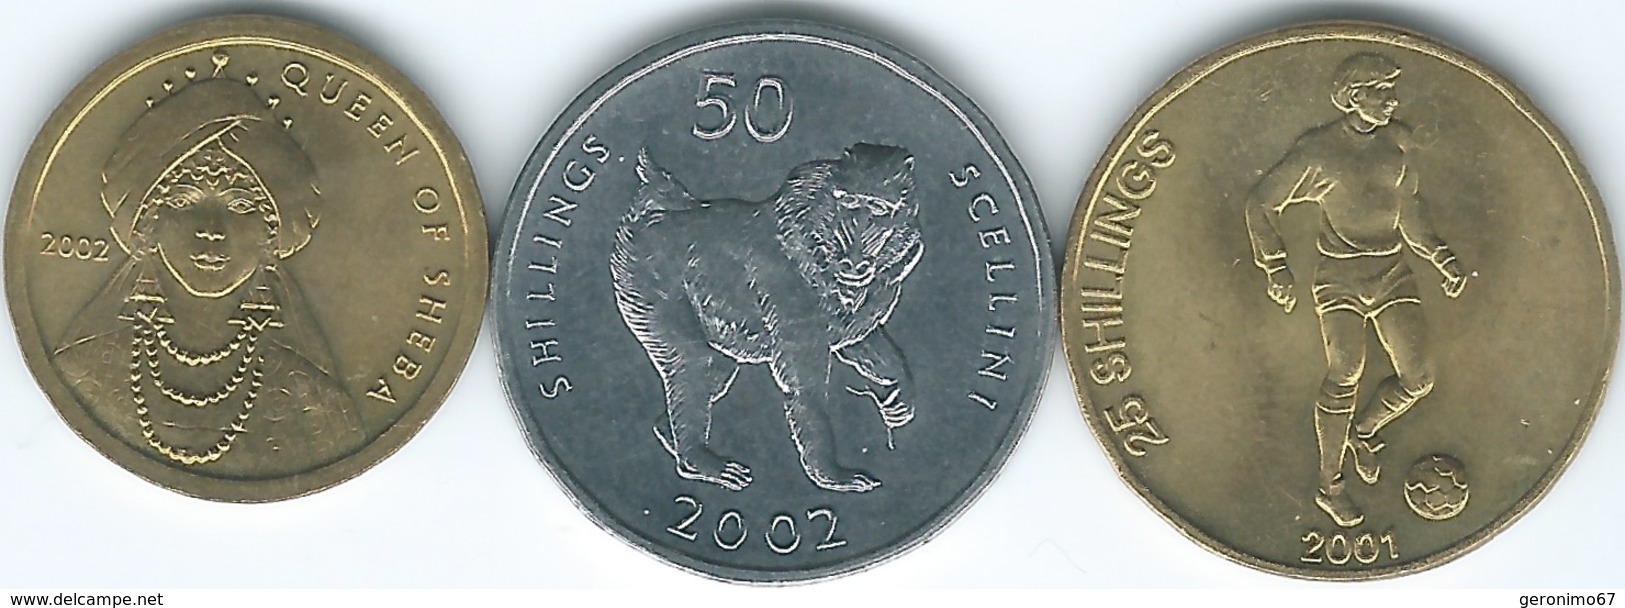 Somalia - 25 Shillings - 2001 - Football (KM103); 2002 - 50 Shillings - Mandrill (KM111) & 100 Shillings - Sheba (KM112) - Somalia